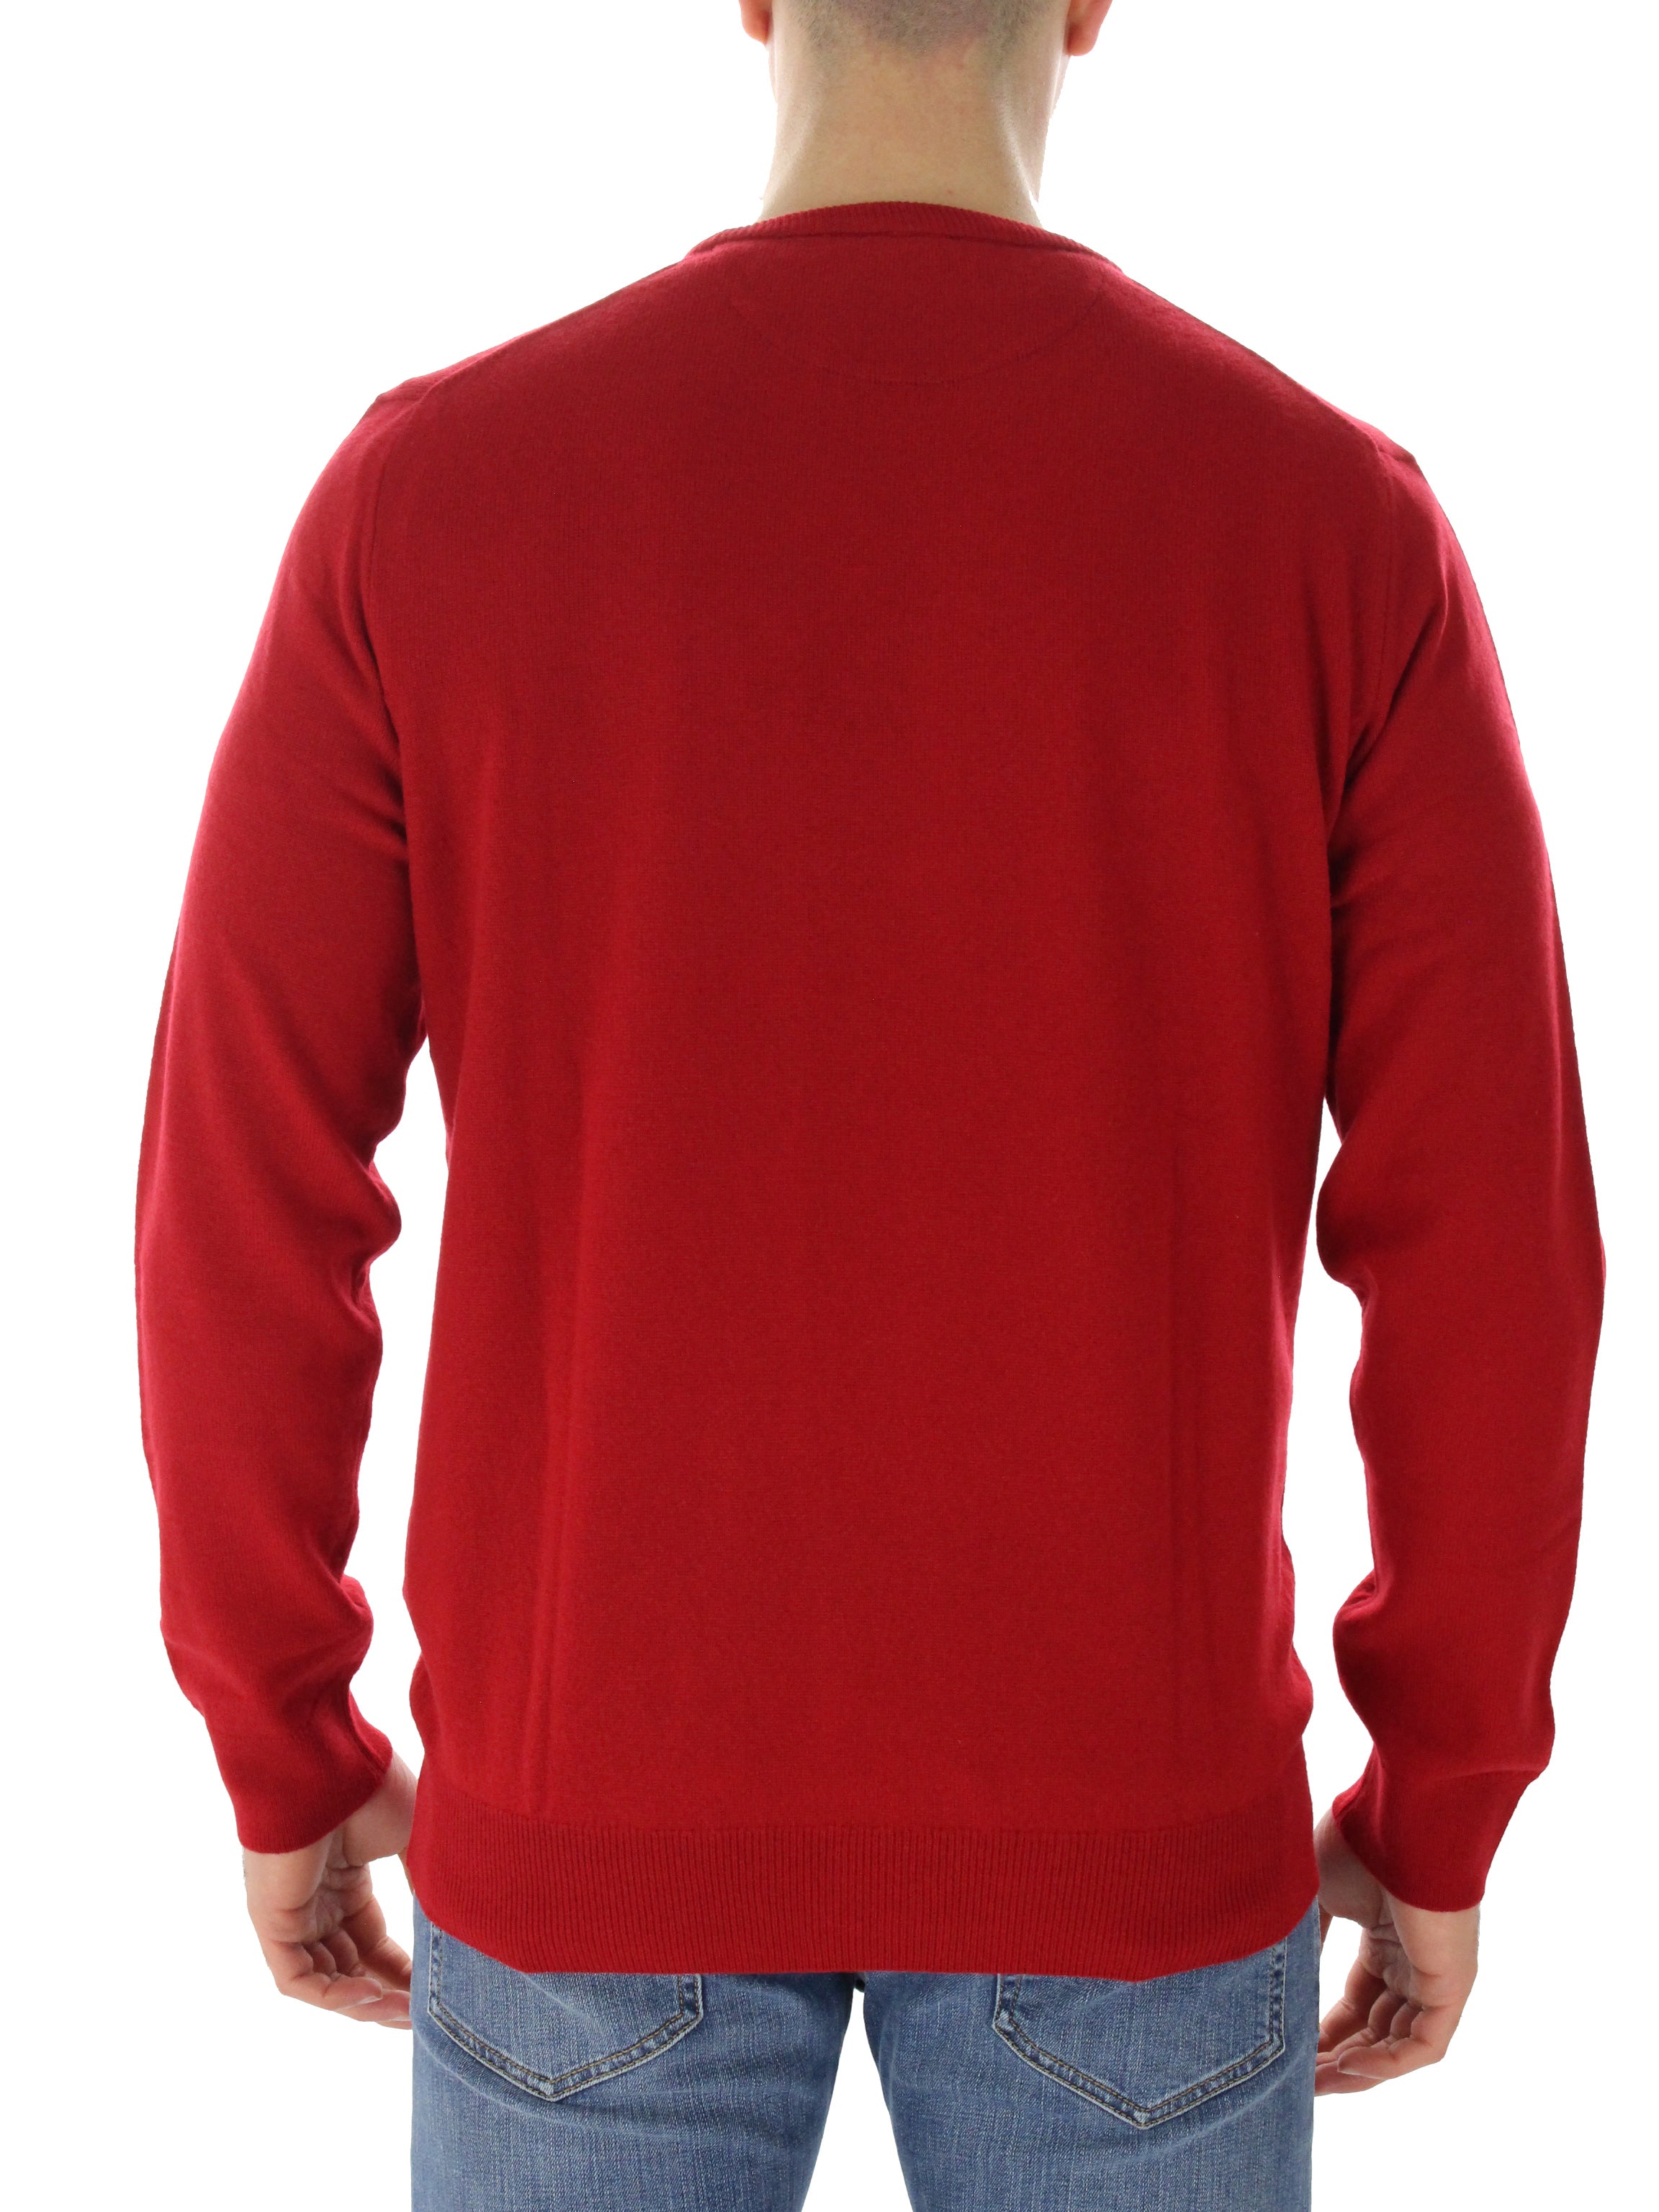 Giro shirt 71087671400 red